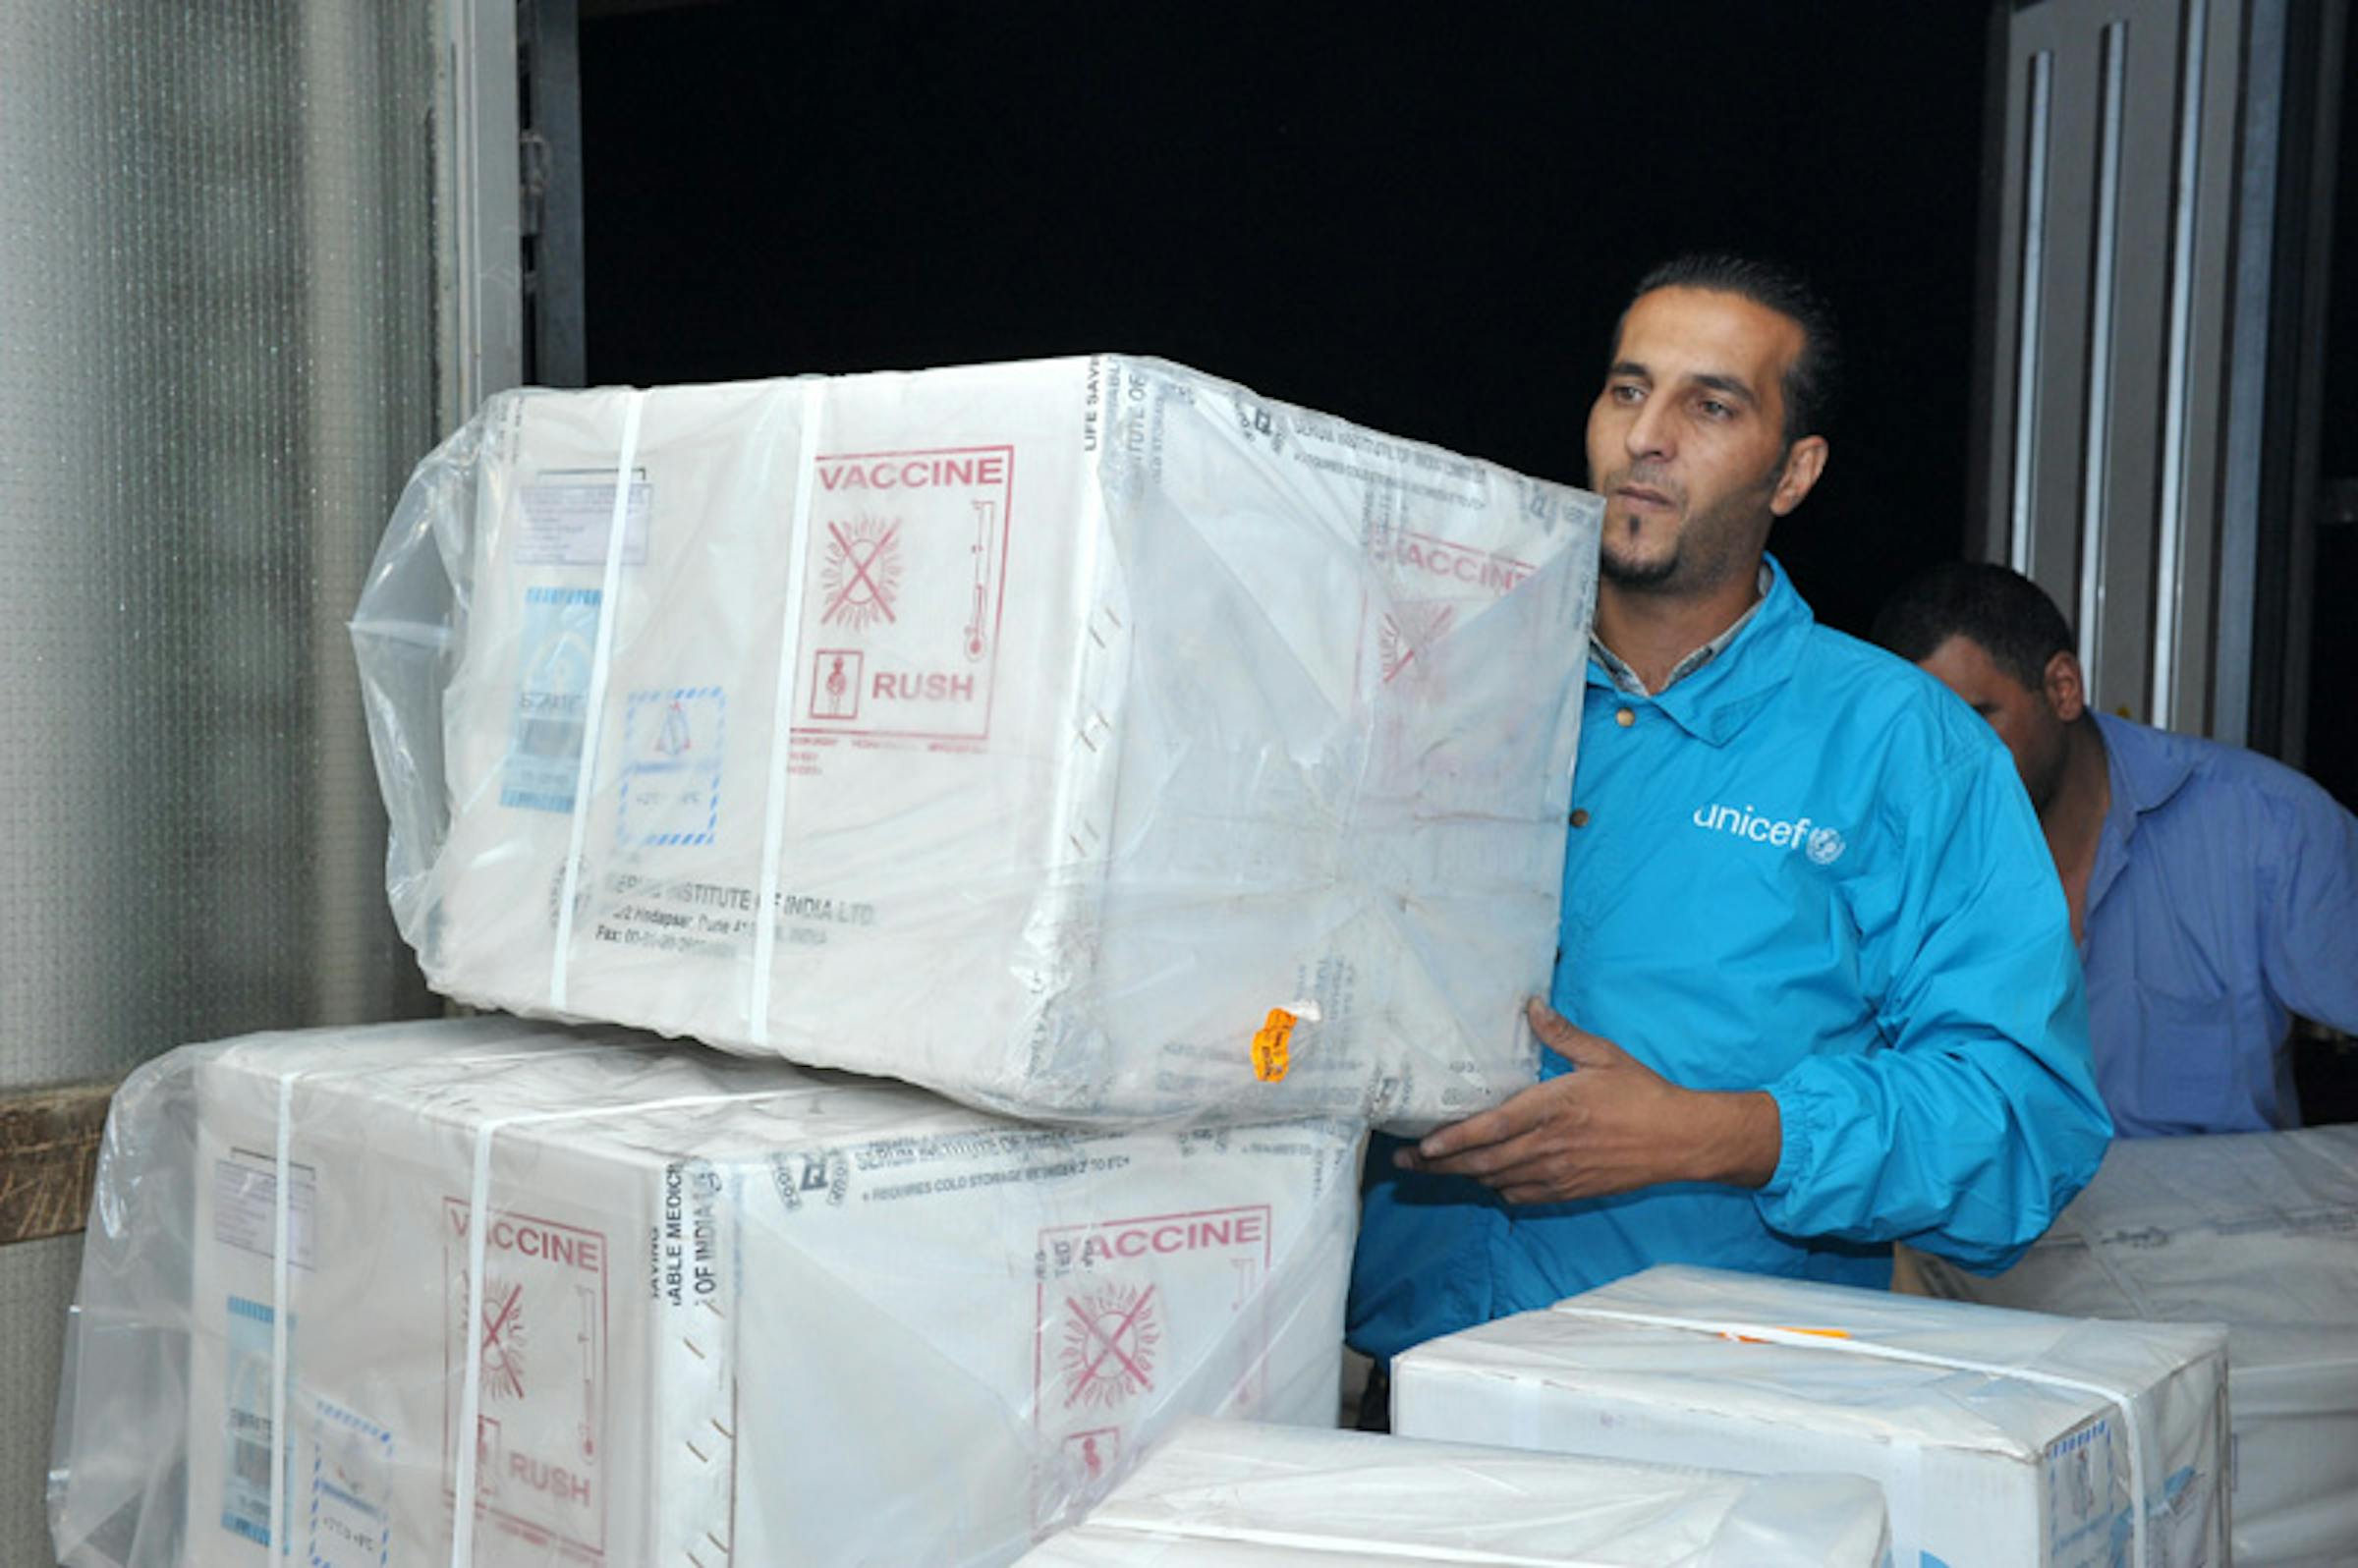 Scorte di vaccini destinati ai profughi della Siria vengono scaricati in un magazzino dell'UNICEF ad Amman (Giordania) - ©UNICEF Giordania/2012/Balian